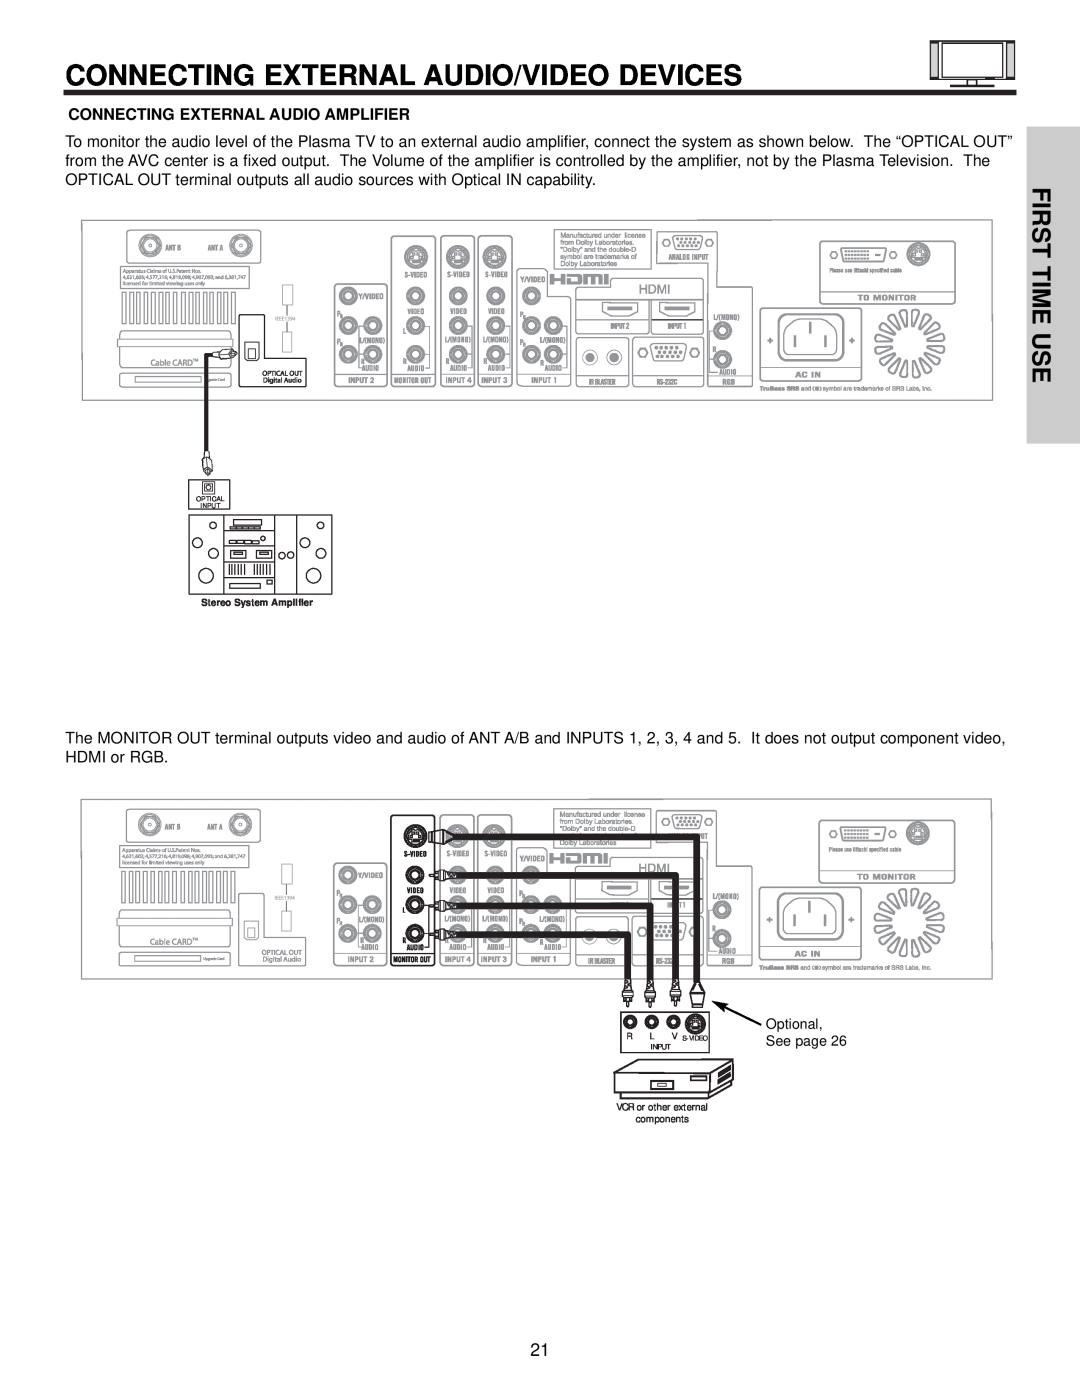 Hitachi 42HDX61, 55HDX61 Connecting External Audio/Video Devices, First Time Use, Connecting External Audio Amplifier 